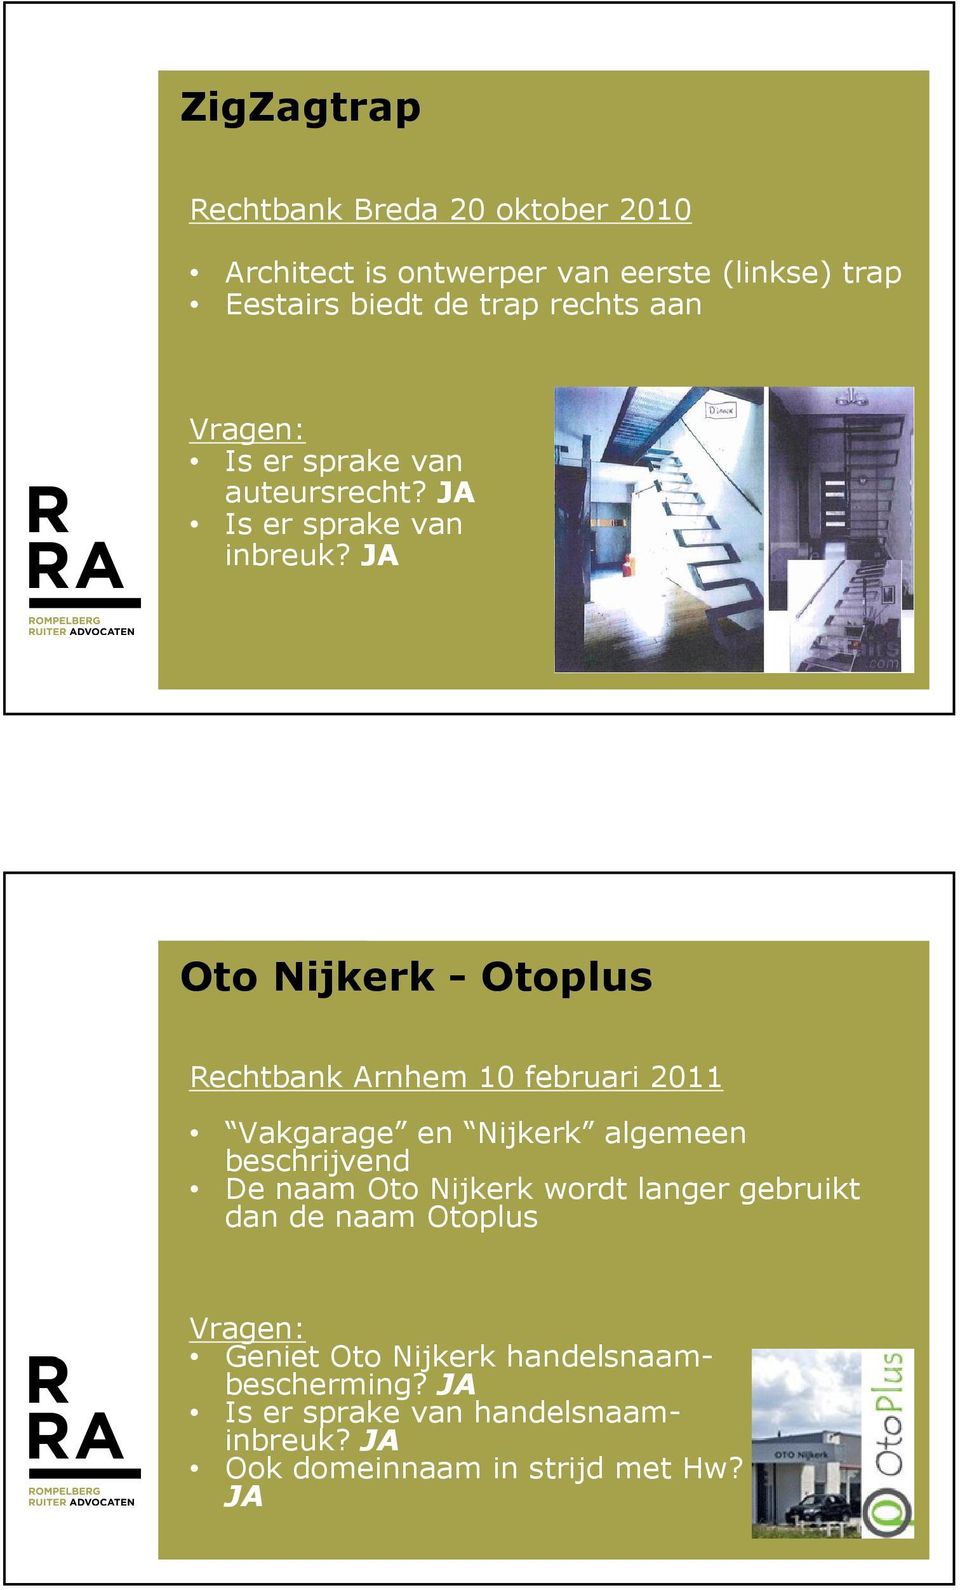 JA Oto Nijkerk - Otoplus Rechtbank Arnhem 10 februari 2011 Vakgarage en Nijkerk algemeen beschrijvend De naam Oto Nijkerk